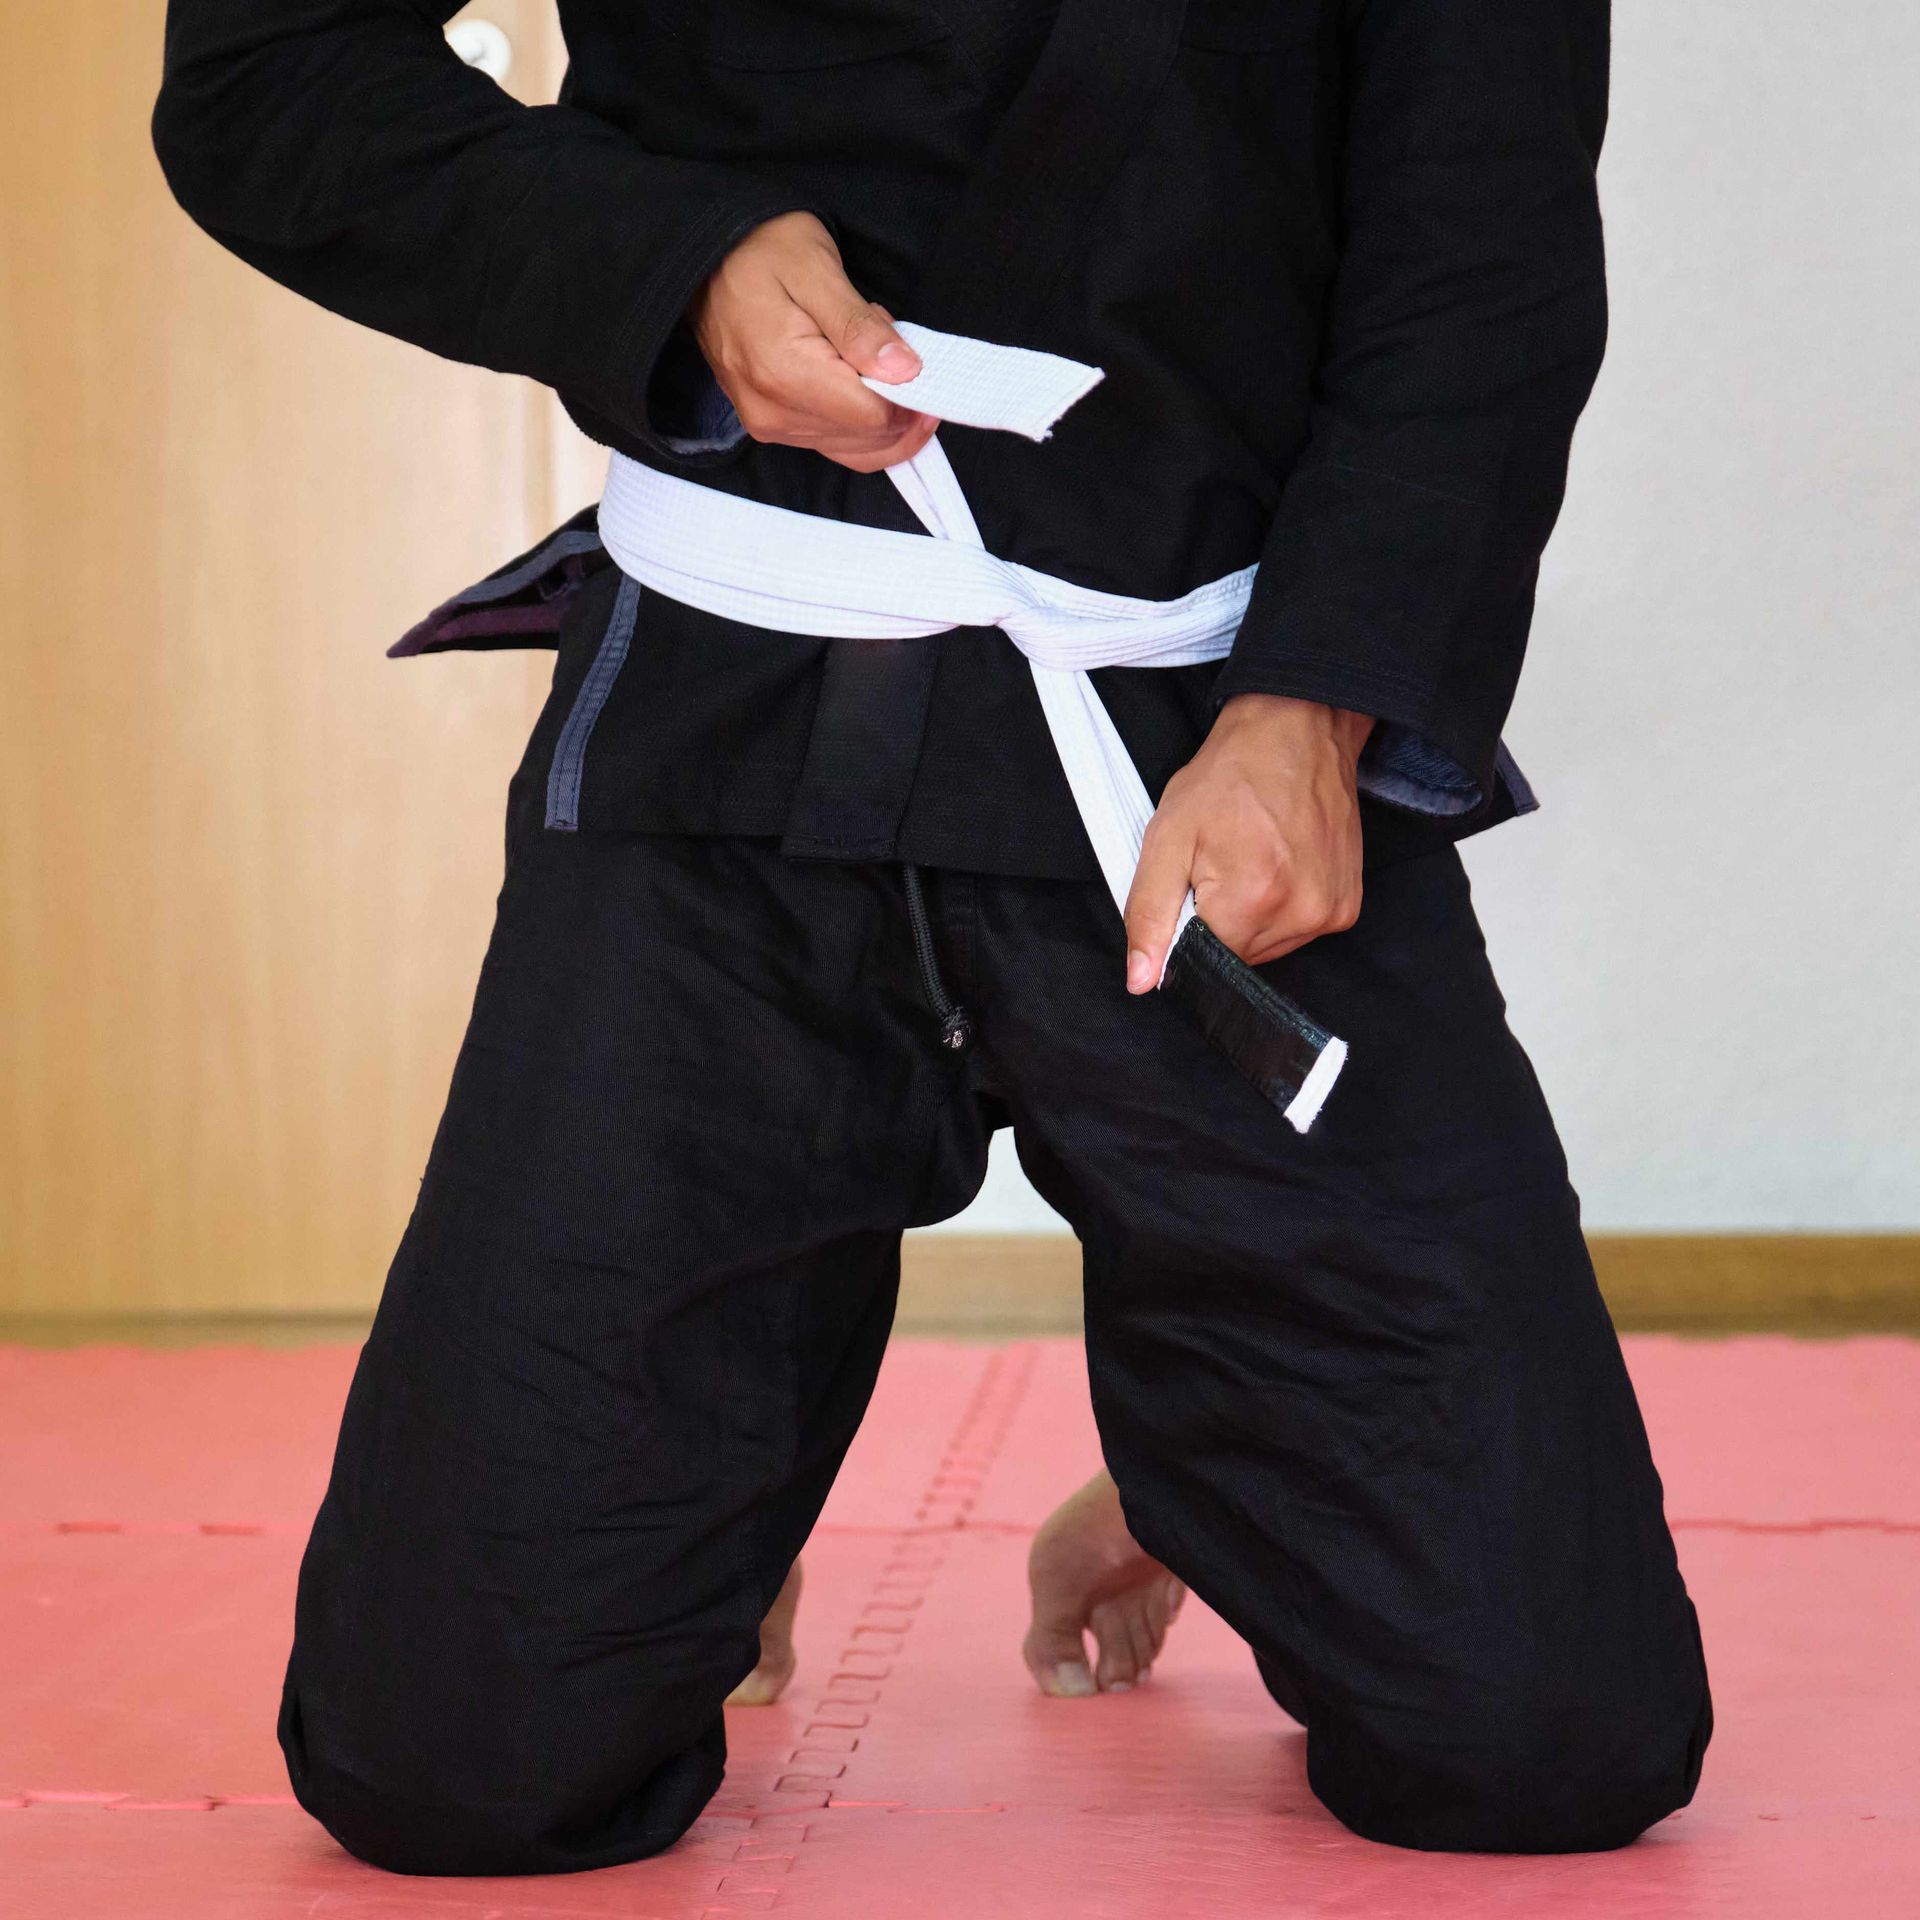 A man in a black karate uniform has a white belt around his waist